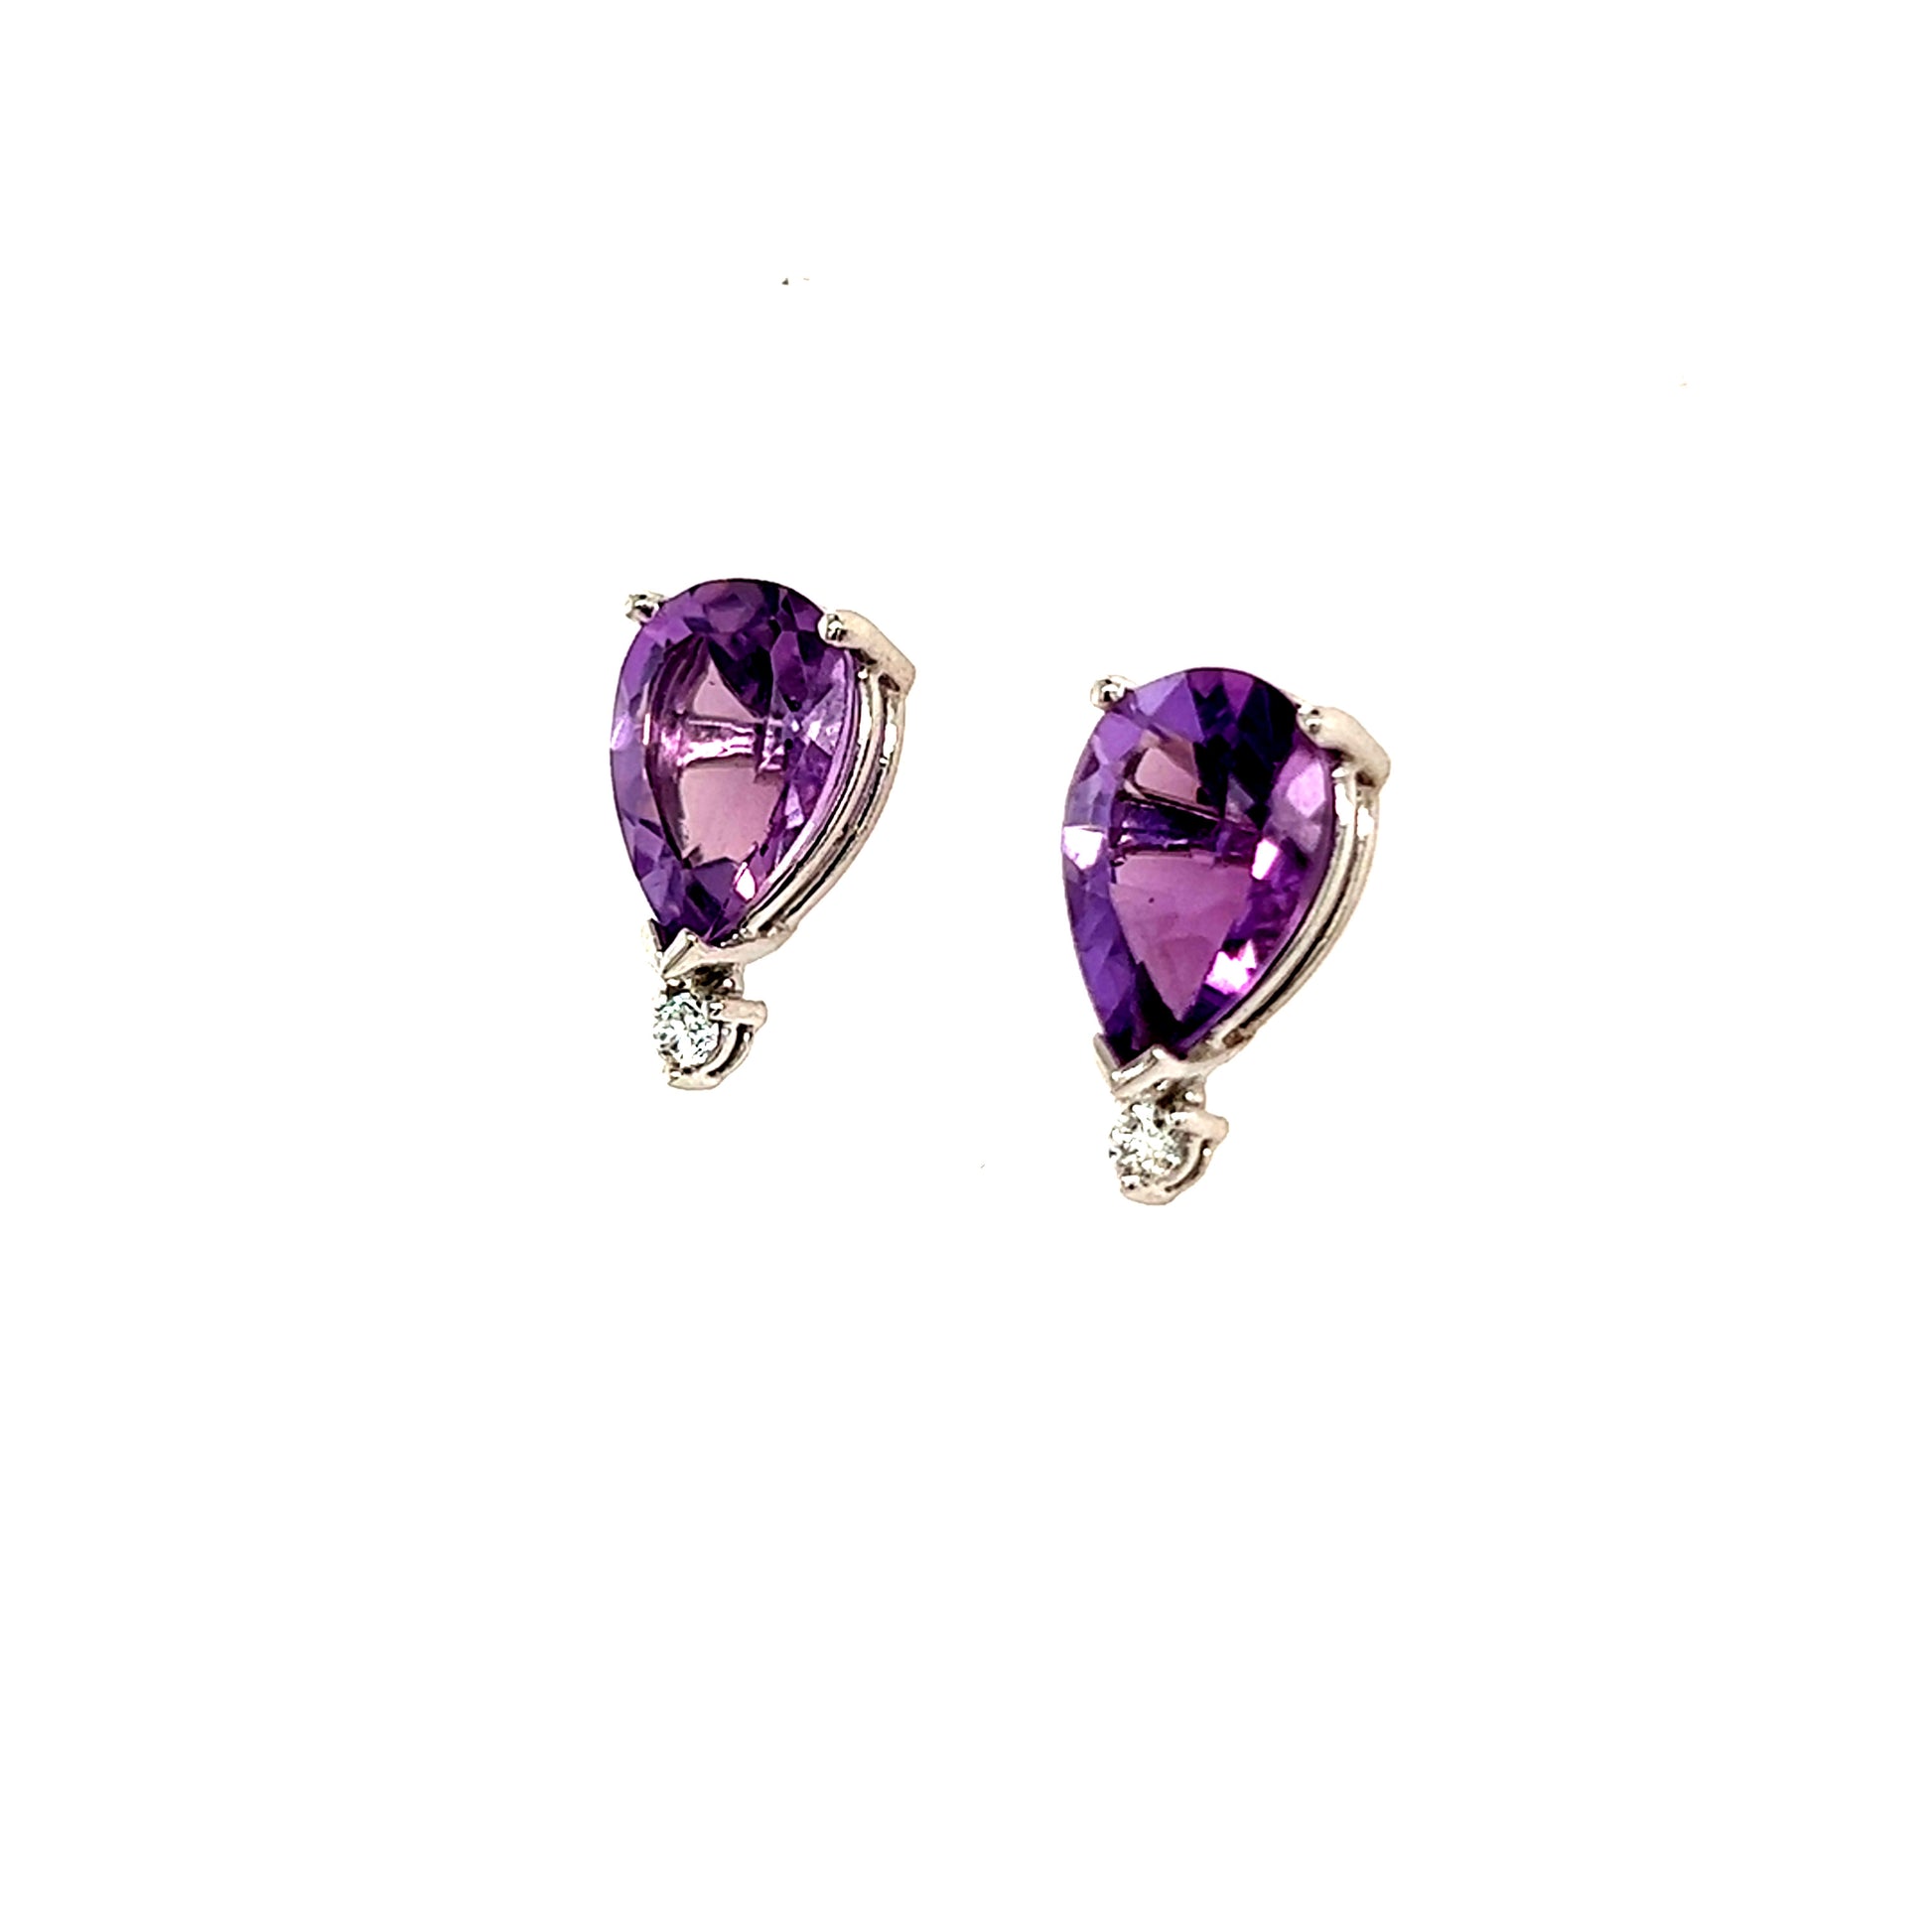 Natural Amethyst Diamond Earrings 14k Gold 3.71 TCW Certified $2,950 210754 - Certified Fine Jewelry